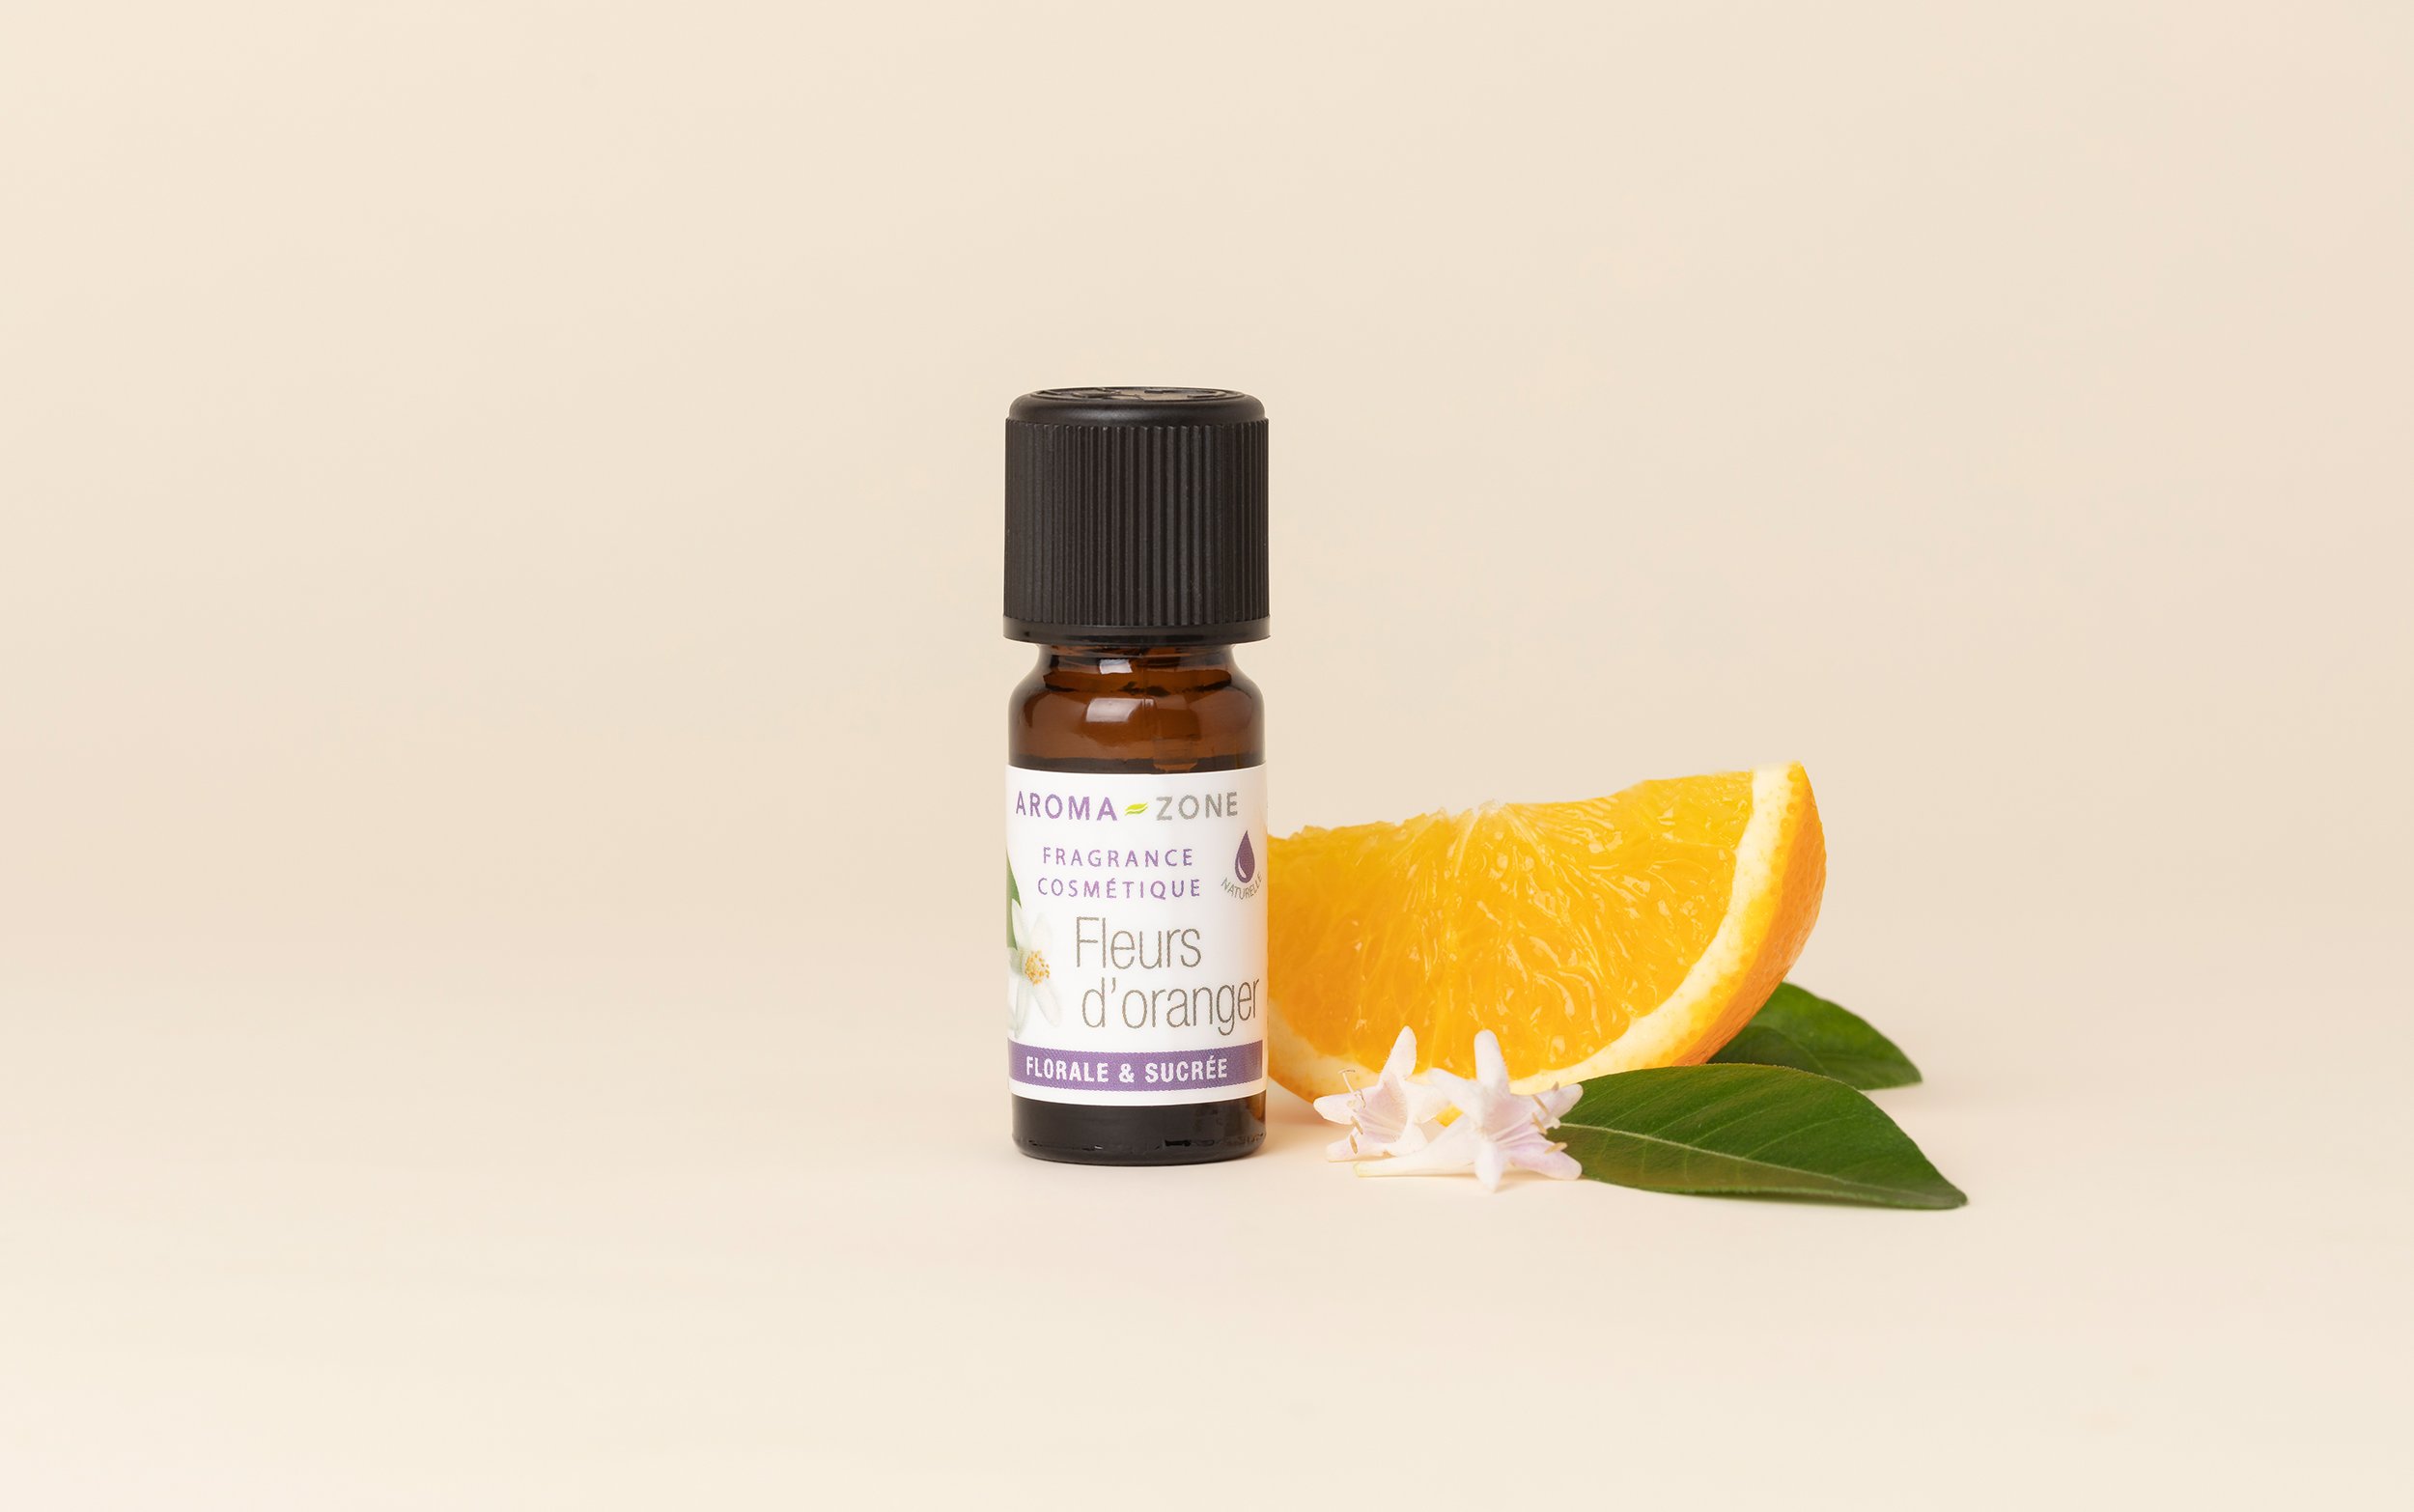 Fragrance cosmétique naturelle Fleurs d'oranger - Aroma-Zone